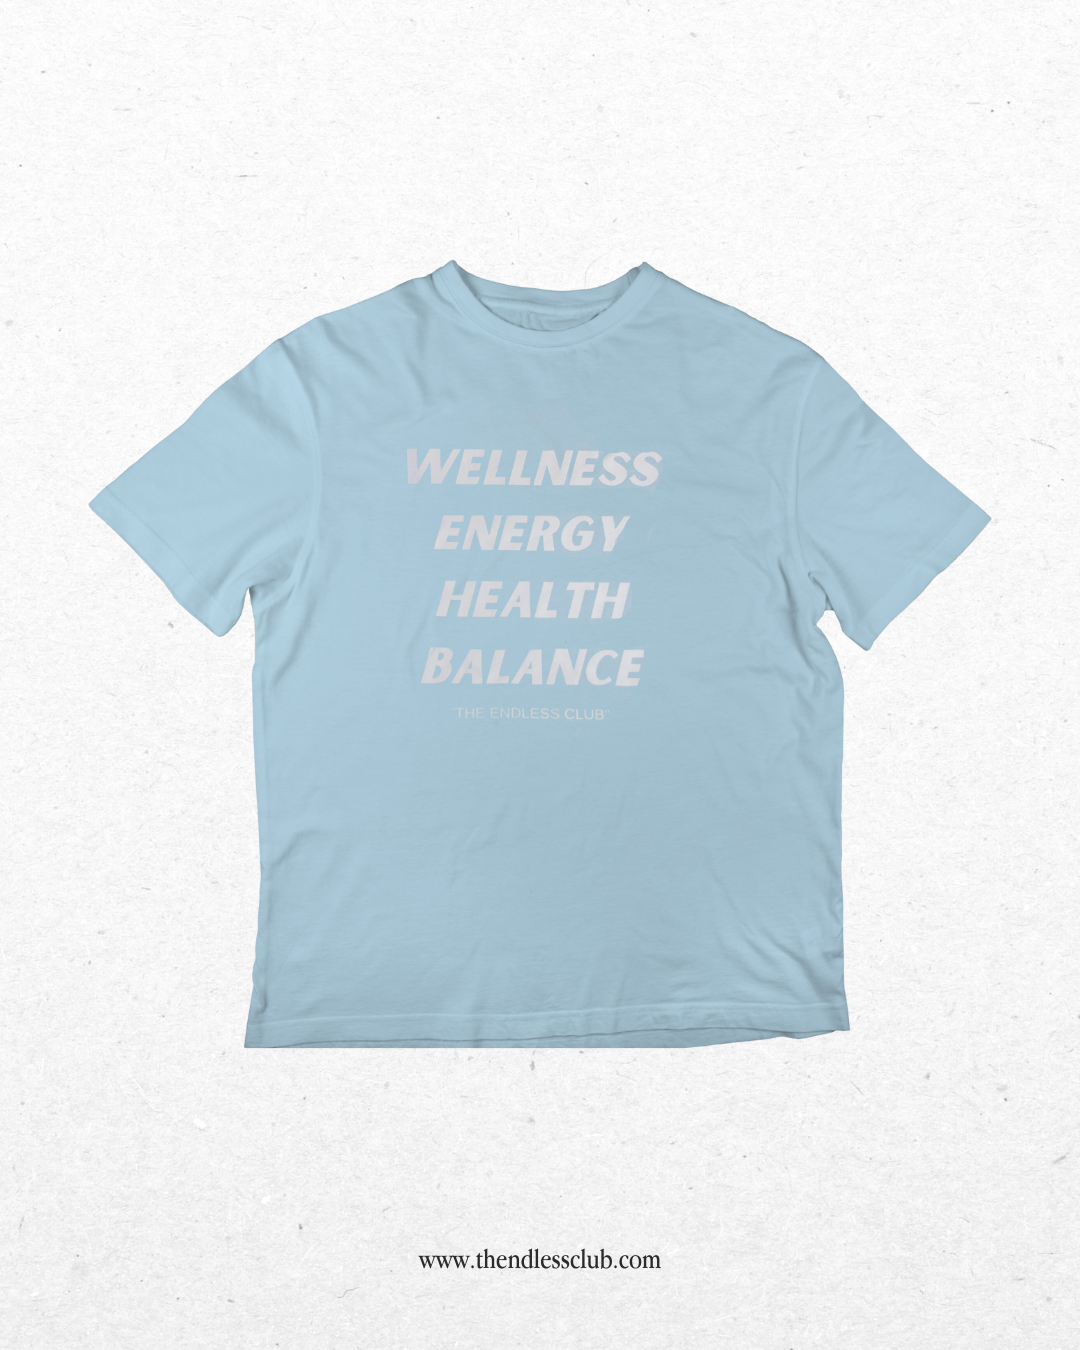 The Wellness T-shirt